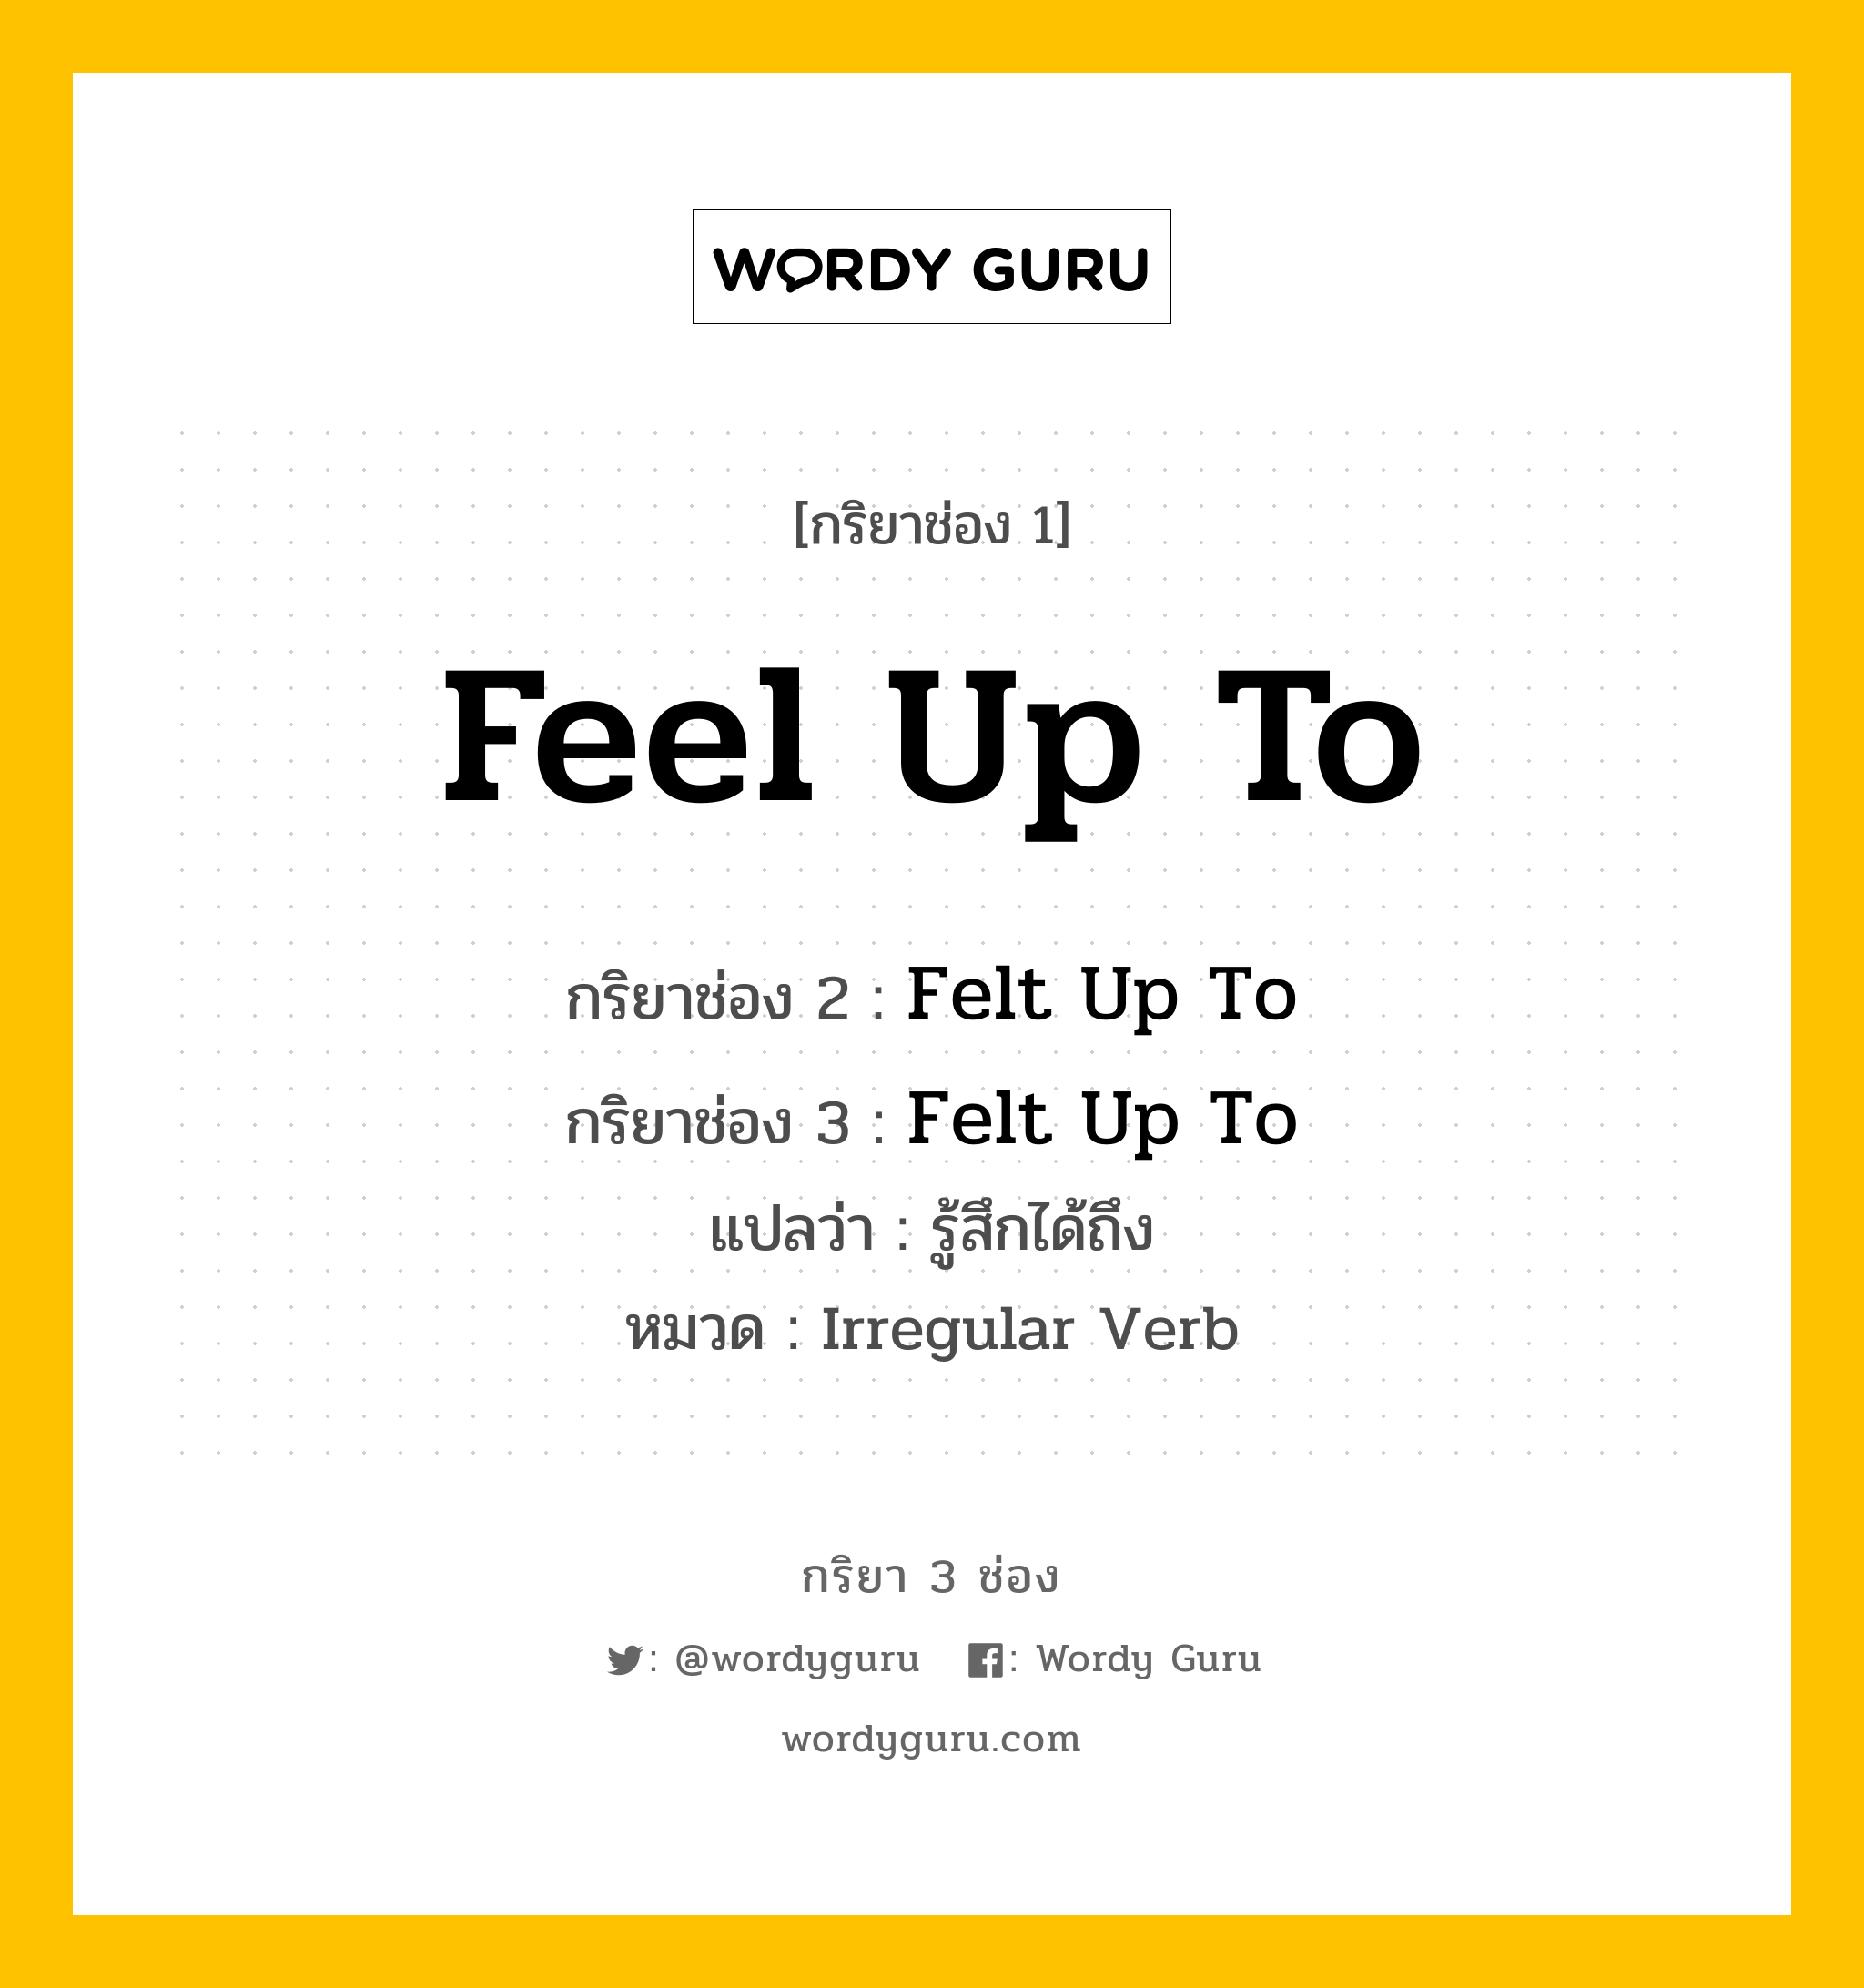 Feel Up To มีกริยา 3 ช่องอะไรบ้าง? คำศัพท์ในกลุ่มประเภท Irregular Verb, กริยาช่อง 1 Feel Up To กริยาช่อง 2 Felt Up To กริยาช่อง 3 Felt Up To แปลว่า รู้สึกได้ถึง หมวด Irregular Verb หมวด Irregular Verb